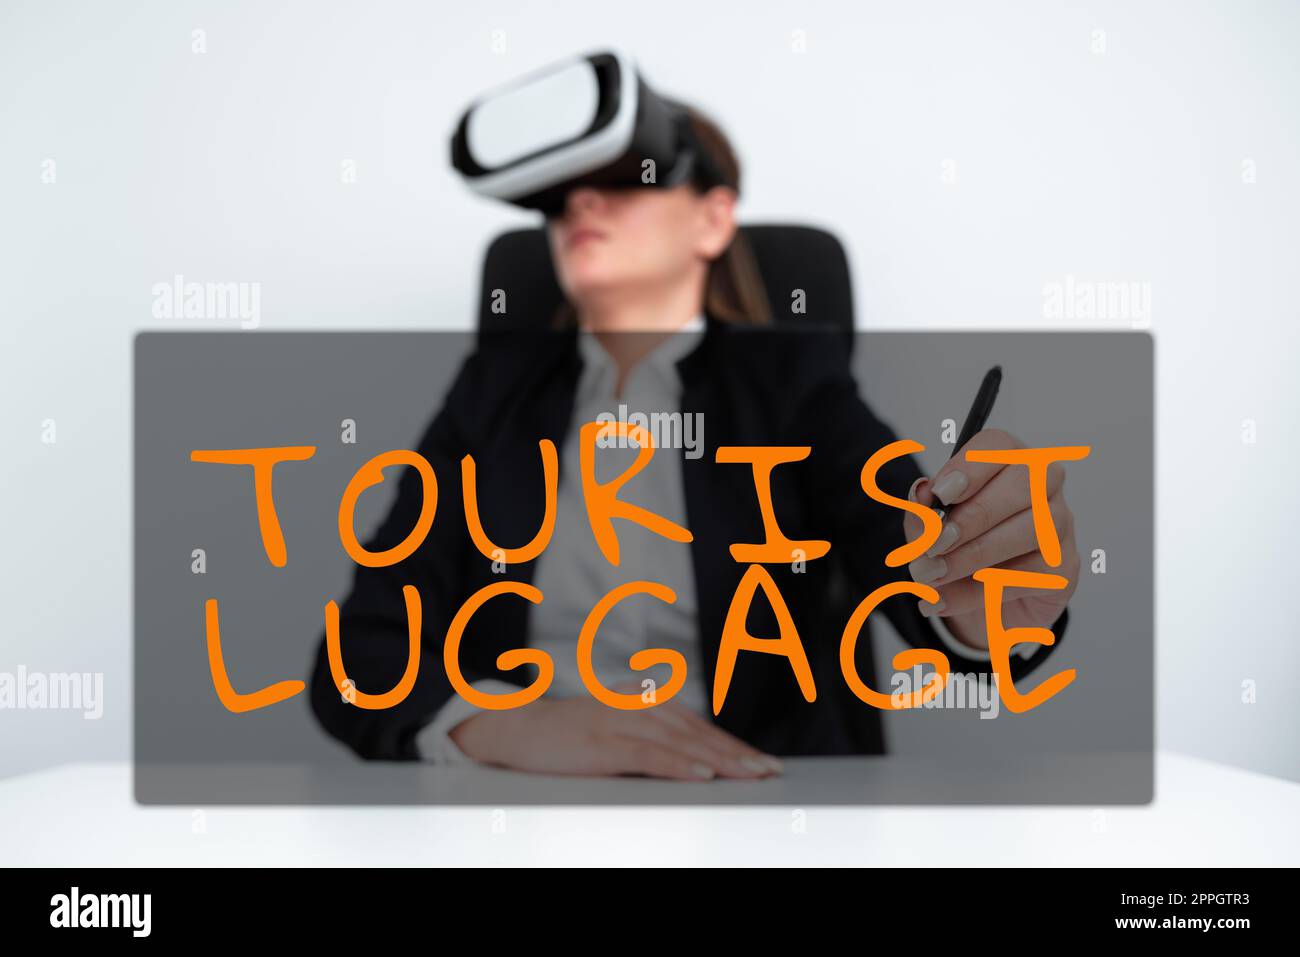 Text caption présentant Tourist Luggagebig sac qui contient tout ce dont on a besoin pour voyager. Grand sac de vitrine d'affaires qui contient tout ce dont on a besoin pour voyager Banque D'Images